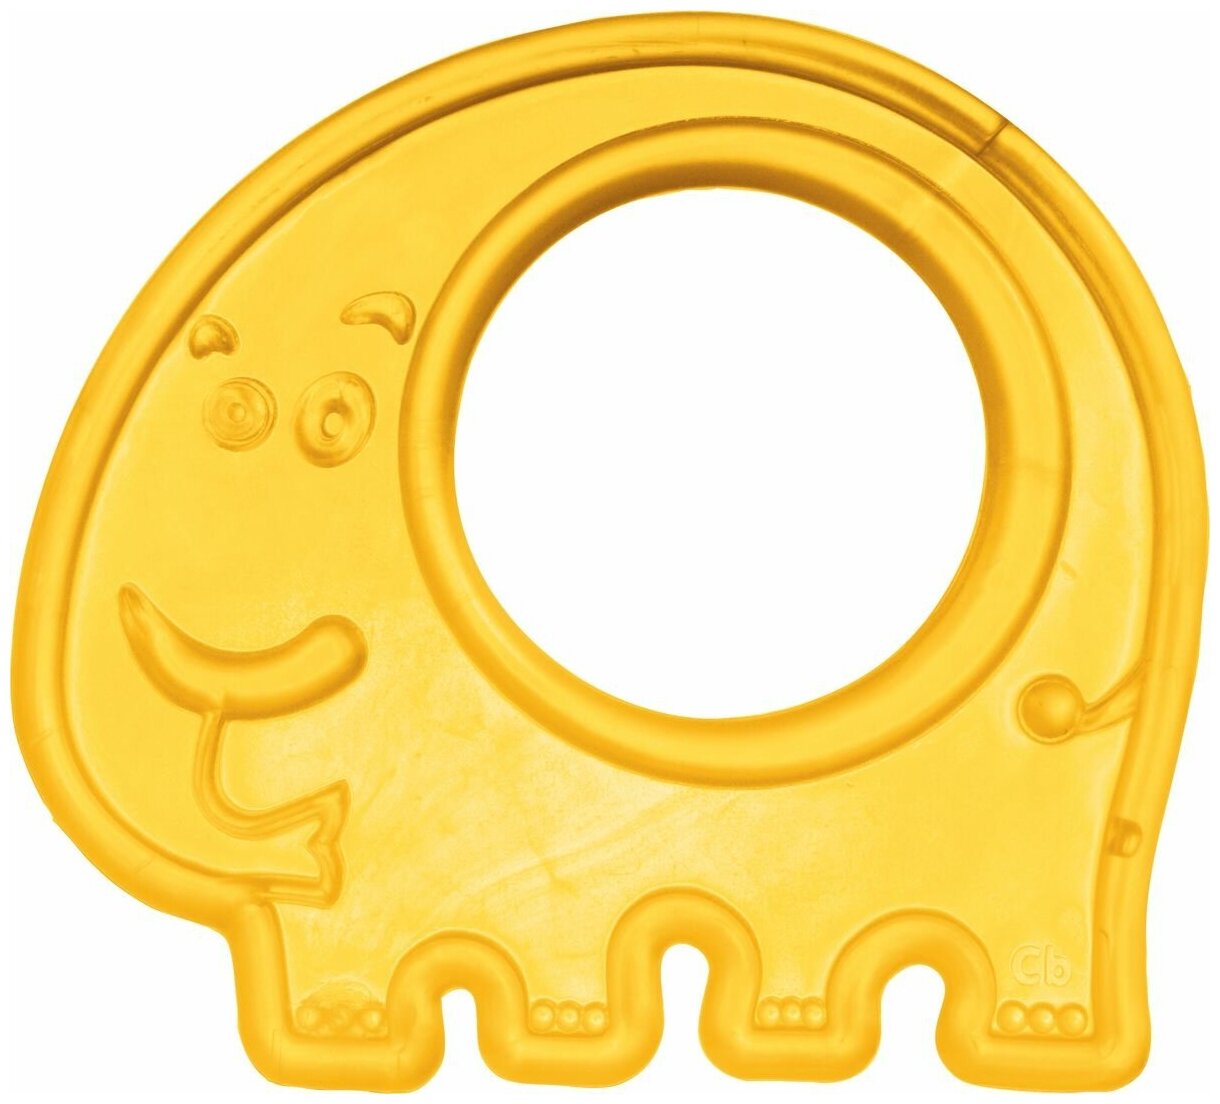 Прорезыватель мягкий, 0+, цвет: желтый, форма: слоник